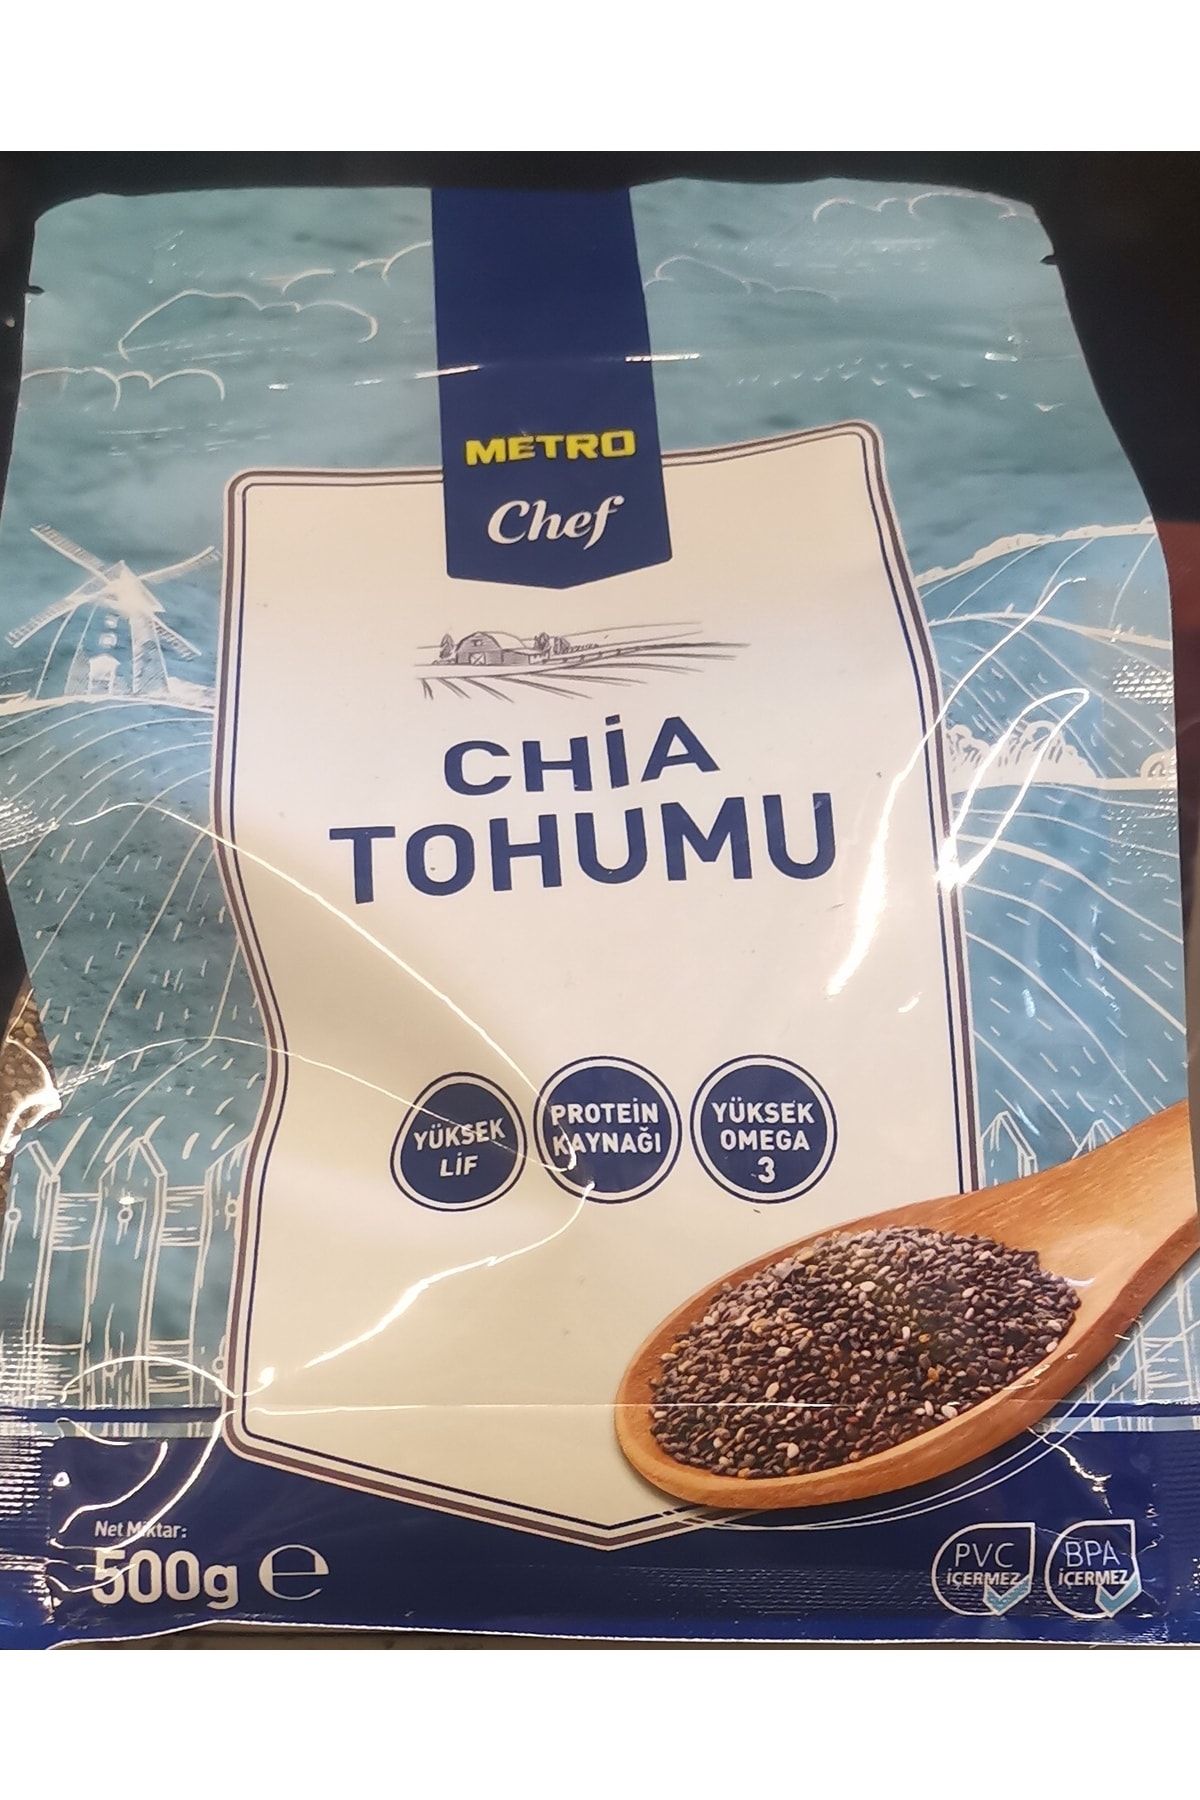 Metro Chef Chia Tohumu